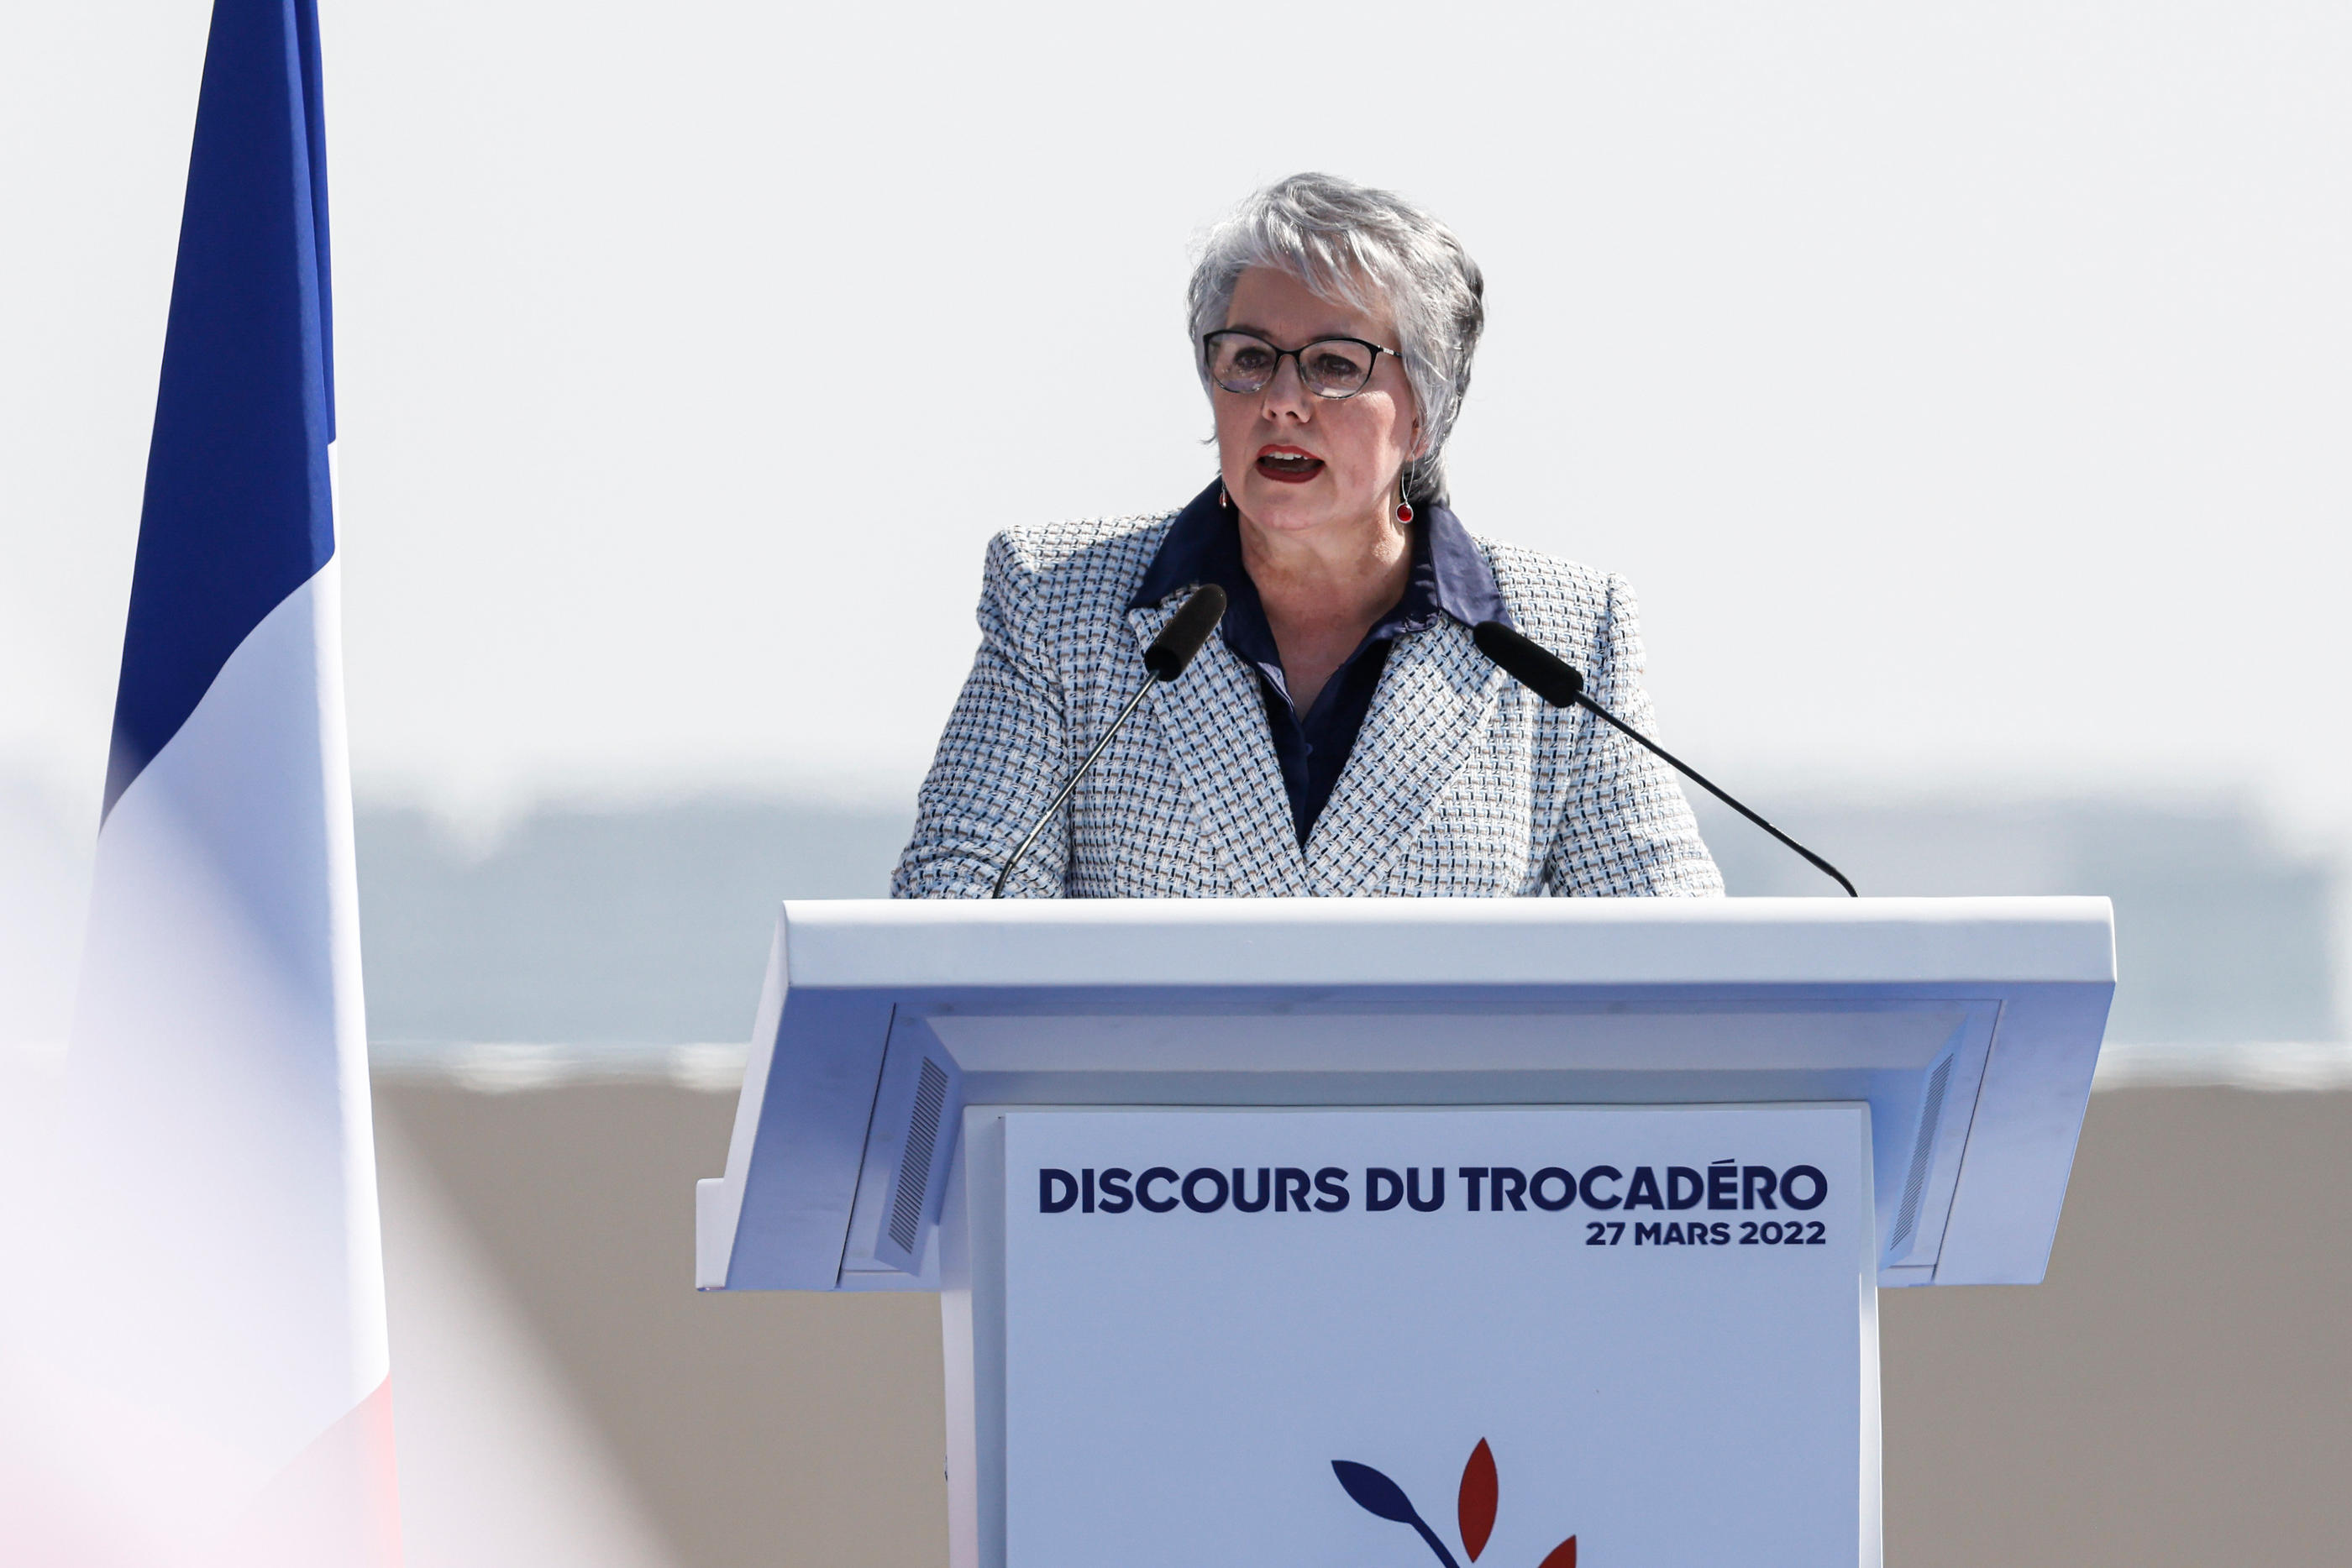 Jacline Mouraud a soutenu Eric Zemmour pendant la campagne présidentielle avant de claquer la porte de Reconquête en septembre 2022. LP/Olivier Corsan